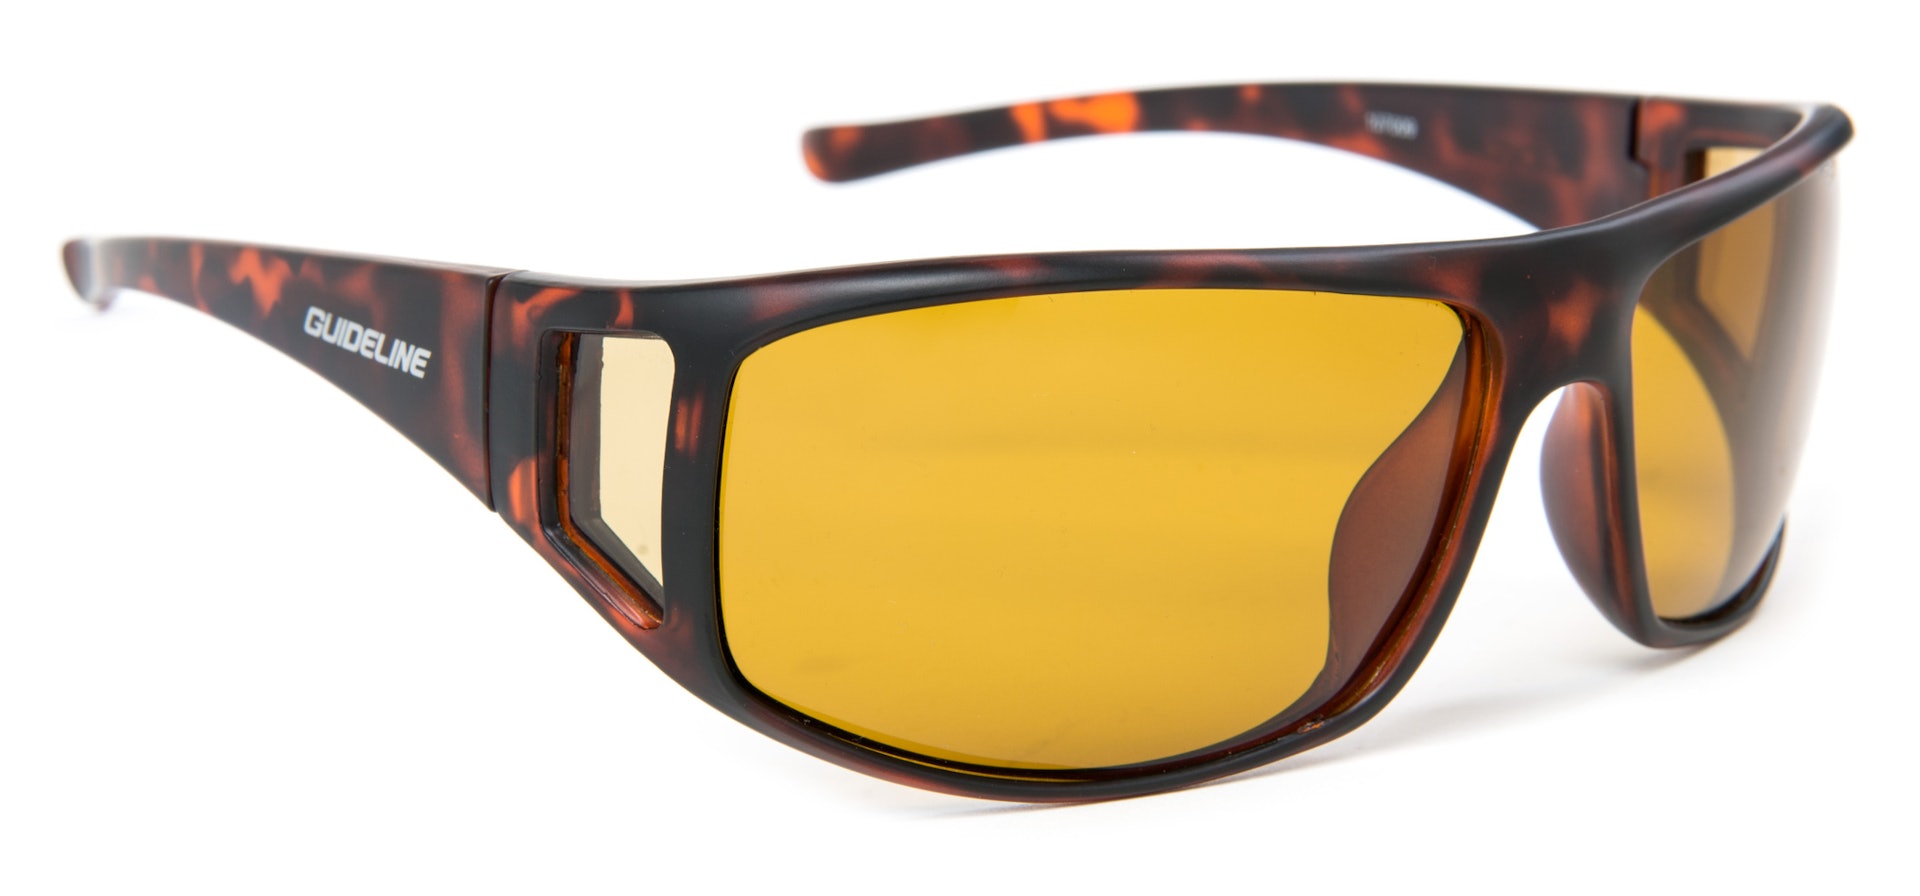 Tactical Sunglasses - Yellow Lens (bilde 1 av 1)